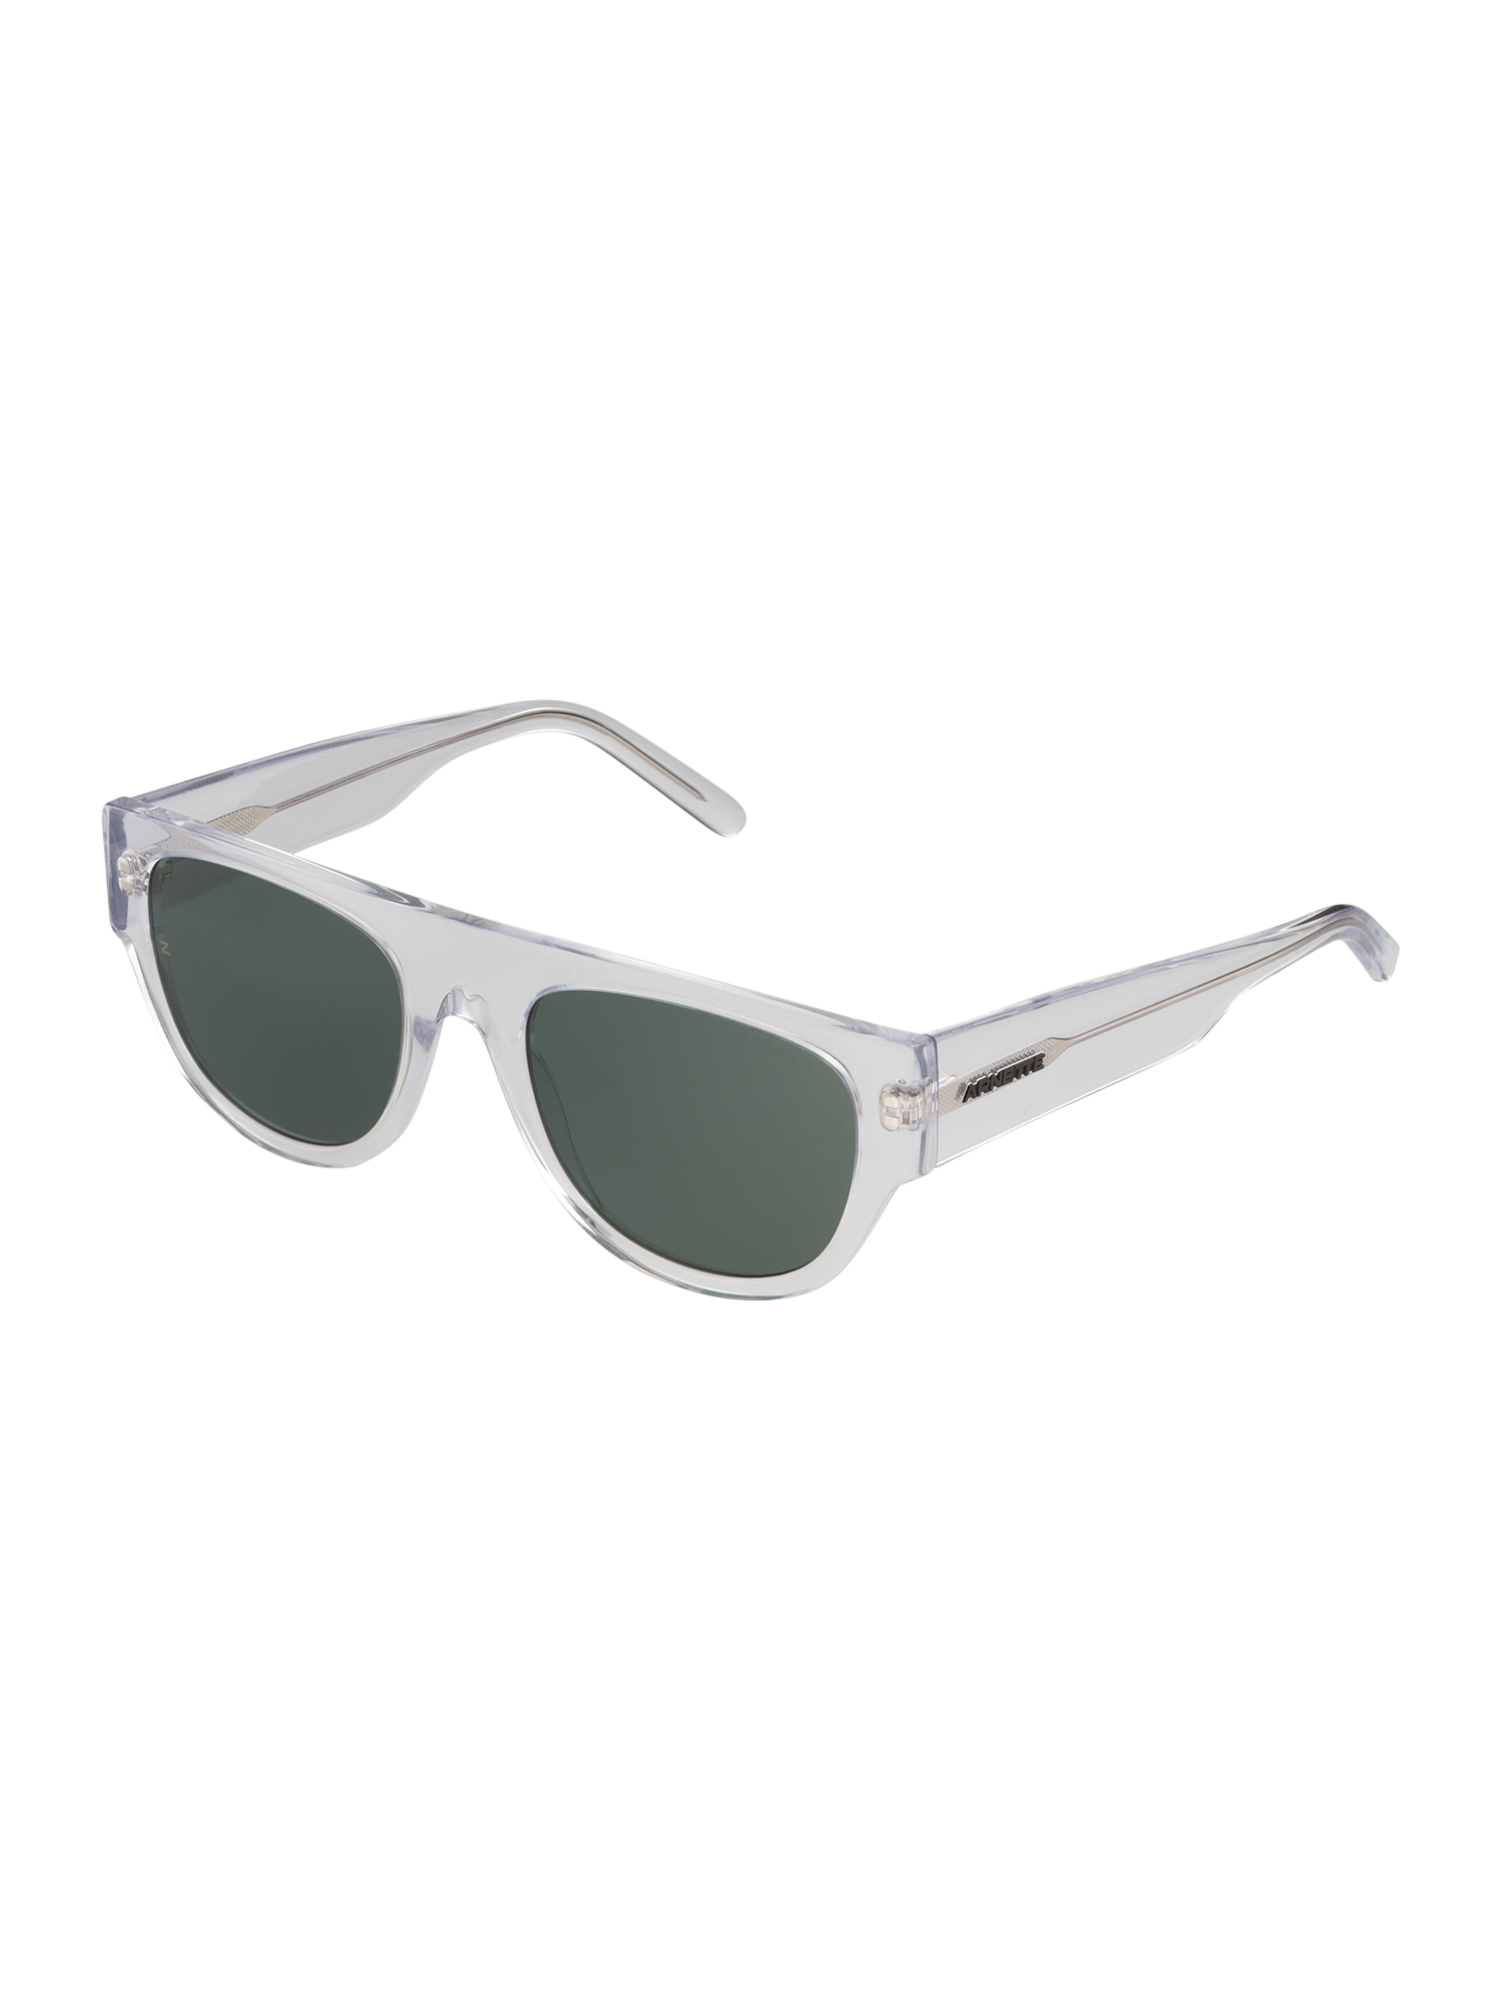 Akcesoria Mężczyźni arnette Okulary przeciwsłoneczne w kolorze Ciemnozielony, Przezroczystym 